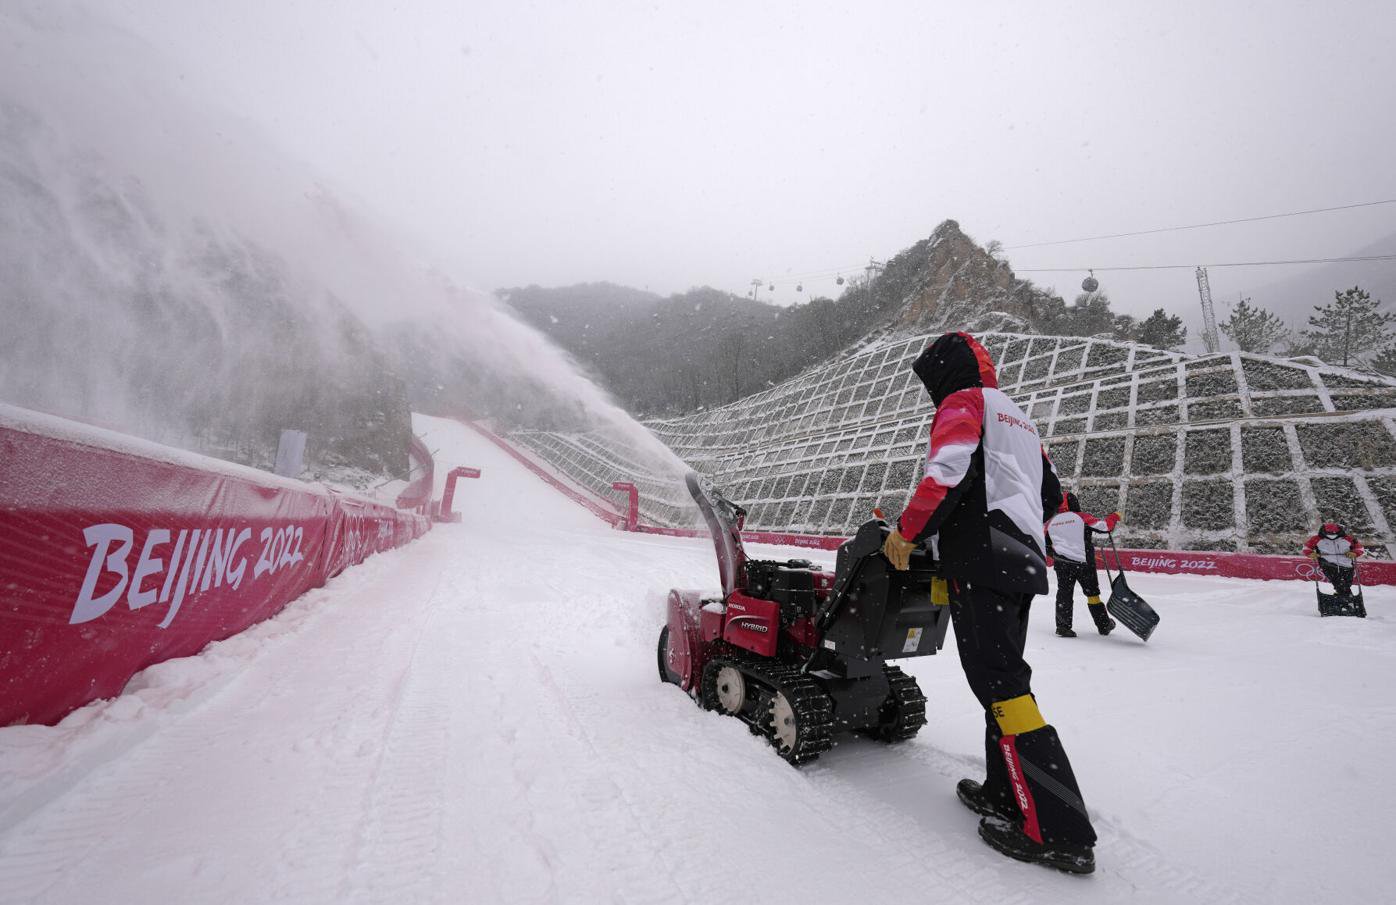 Tuyết lần đầu rơi tại Olympic mùa đông ở Bắc Kinh - 6